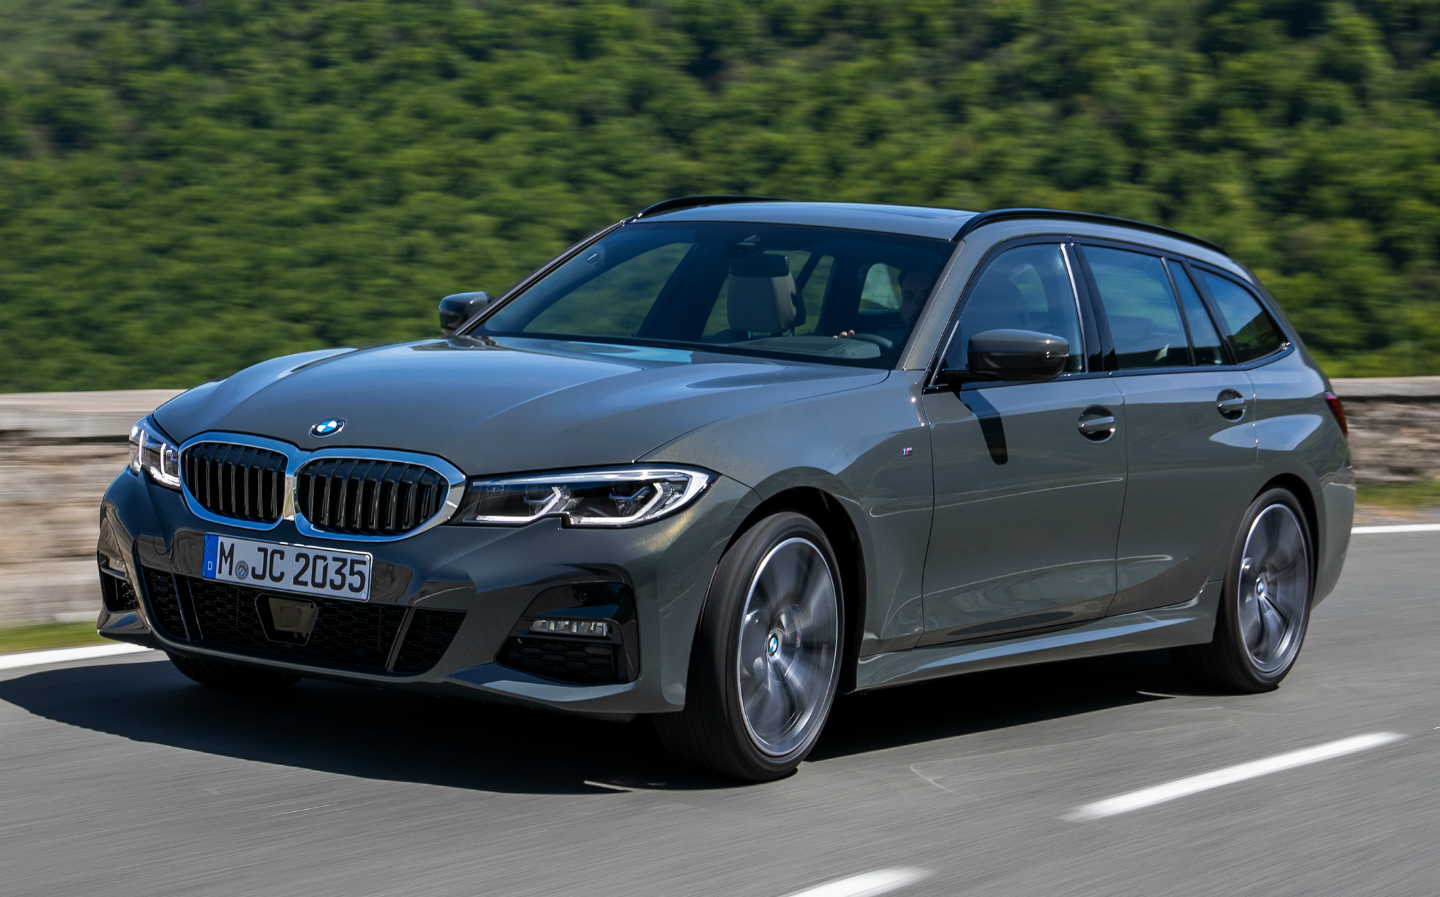 samenzwering Kwik daar ben ik het mee eens 2019 BMW 3 Series Touring review